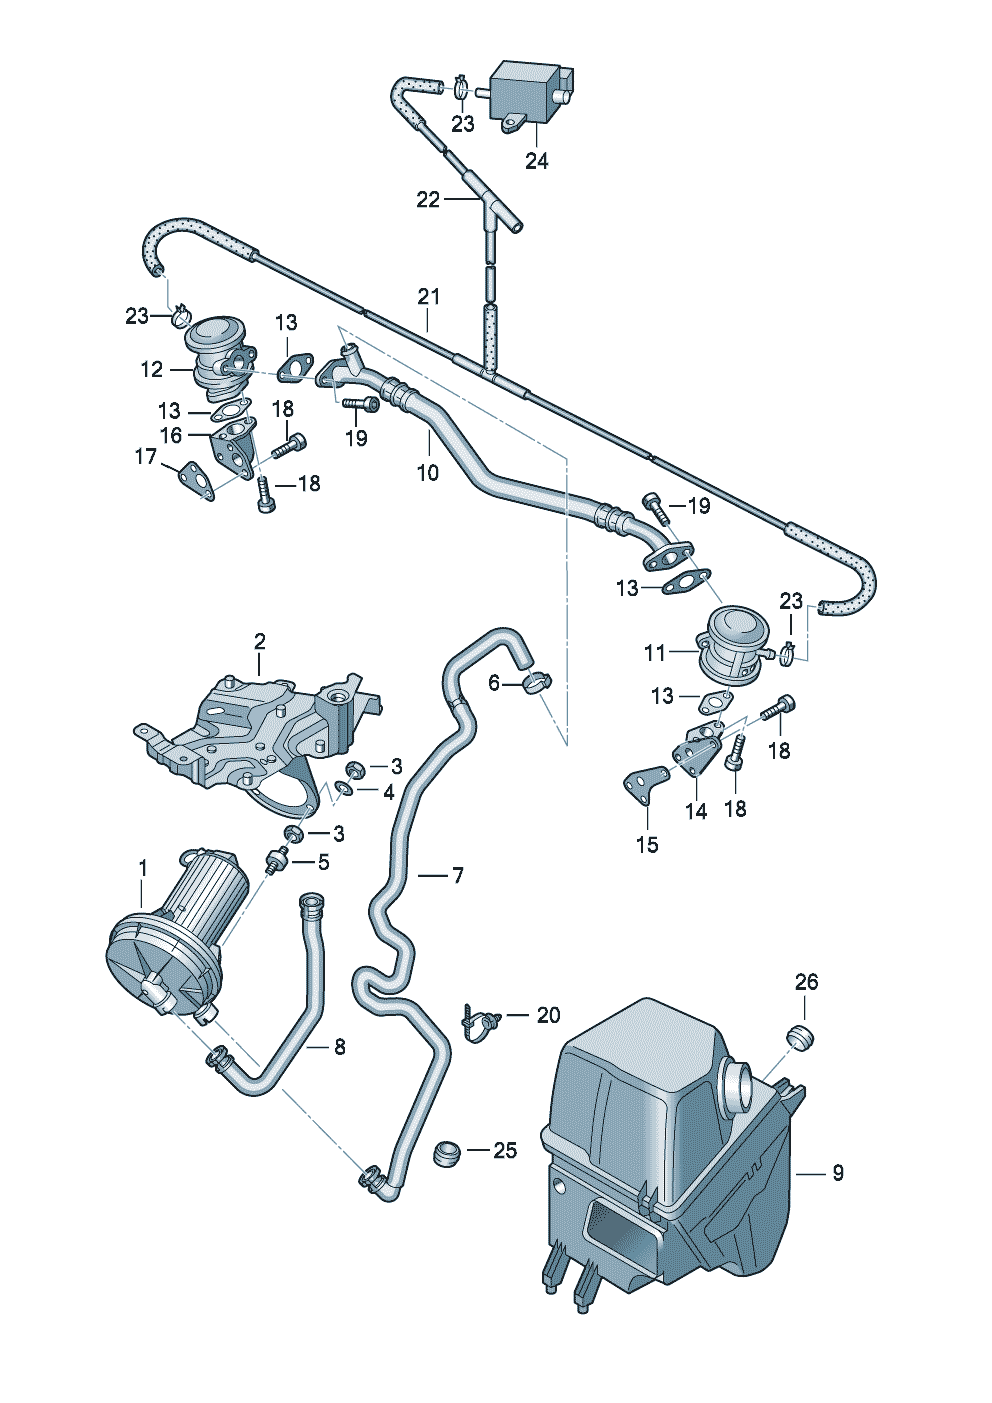 Secondary air pumpkombi valve 3.7/4.2ltr. - Audi A8/S8 quattro - a8q